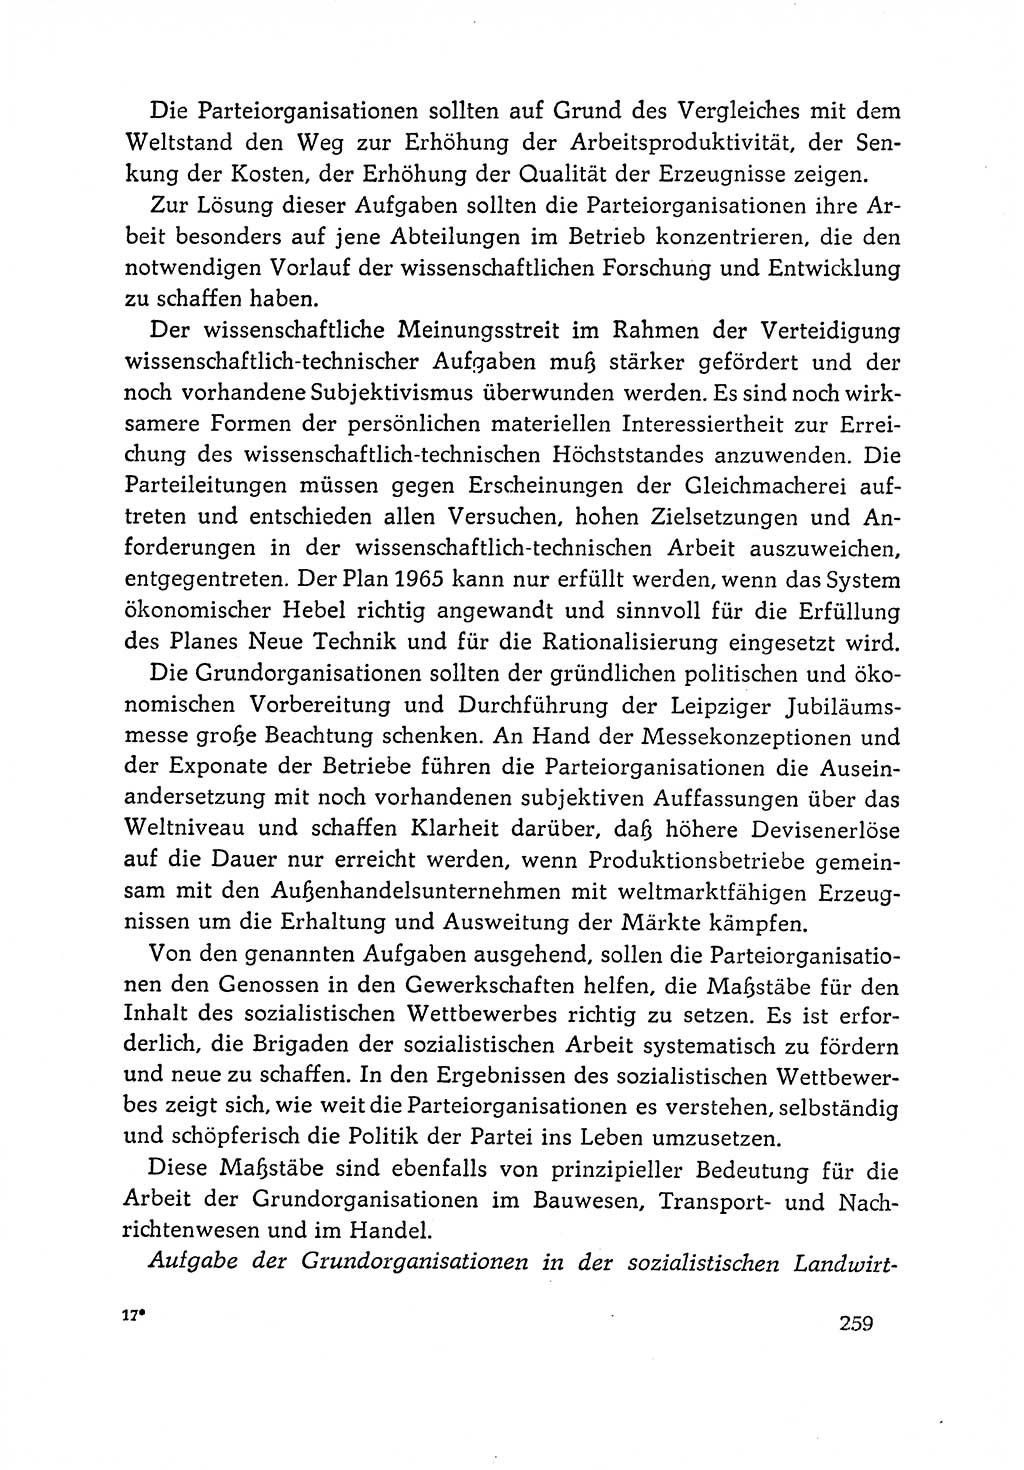 Dokumente der Sozialistischen Einheitspartei Deutschlands (SED) [Deutsche Demokratische Republik (DDR)] 1964-1965, Seite 259 (Dok. SED DDR 1964-1965, S. 259)